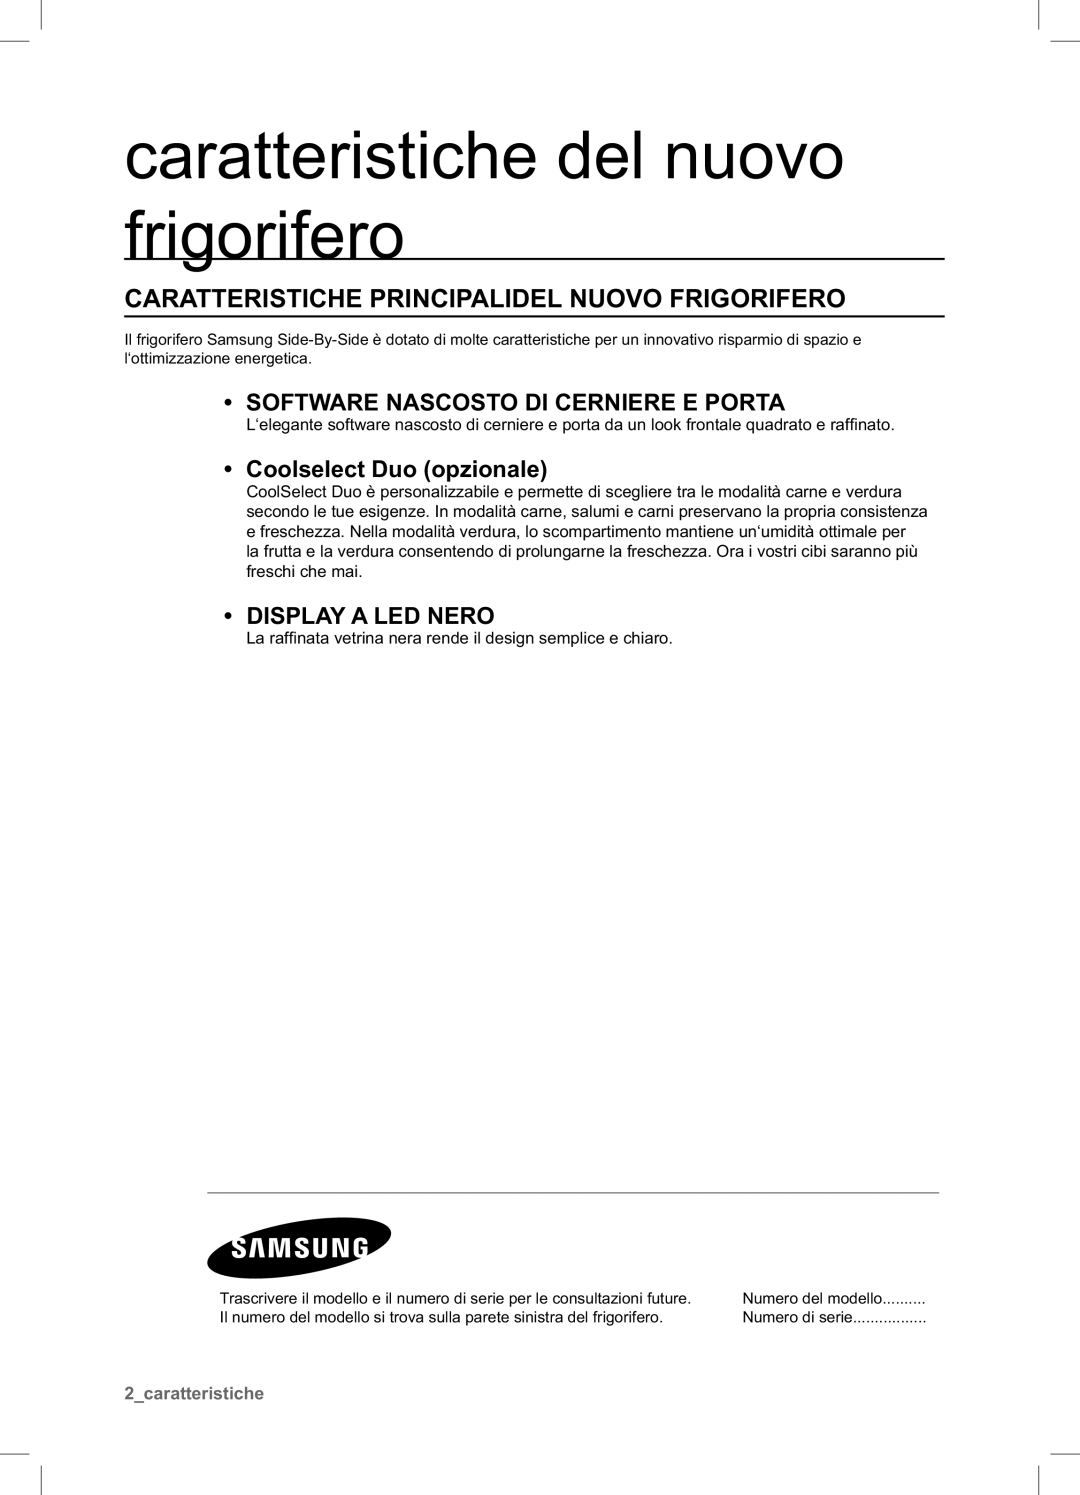 Samsung RSA1NTPE1/XES manual caratteristiche del nuovo frigorifero, Caratteristiche Principalidel Nuovo Frigorifero 